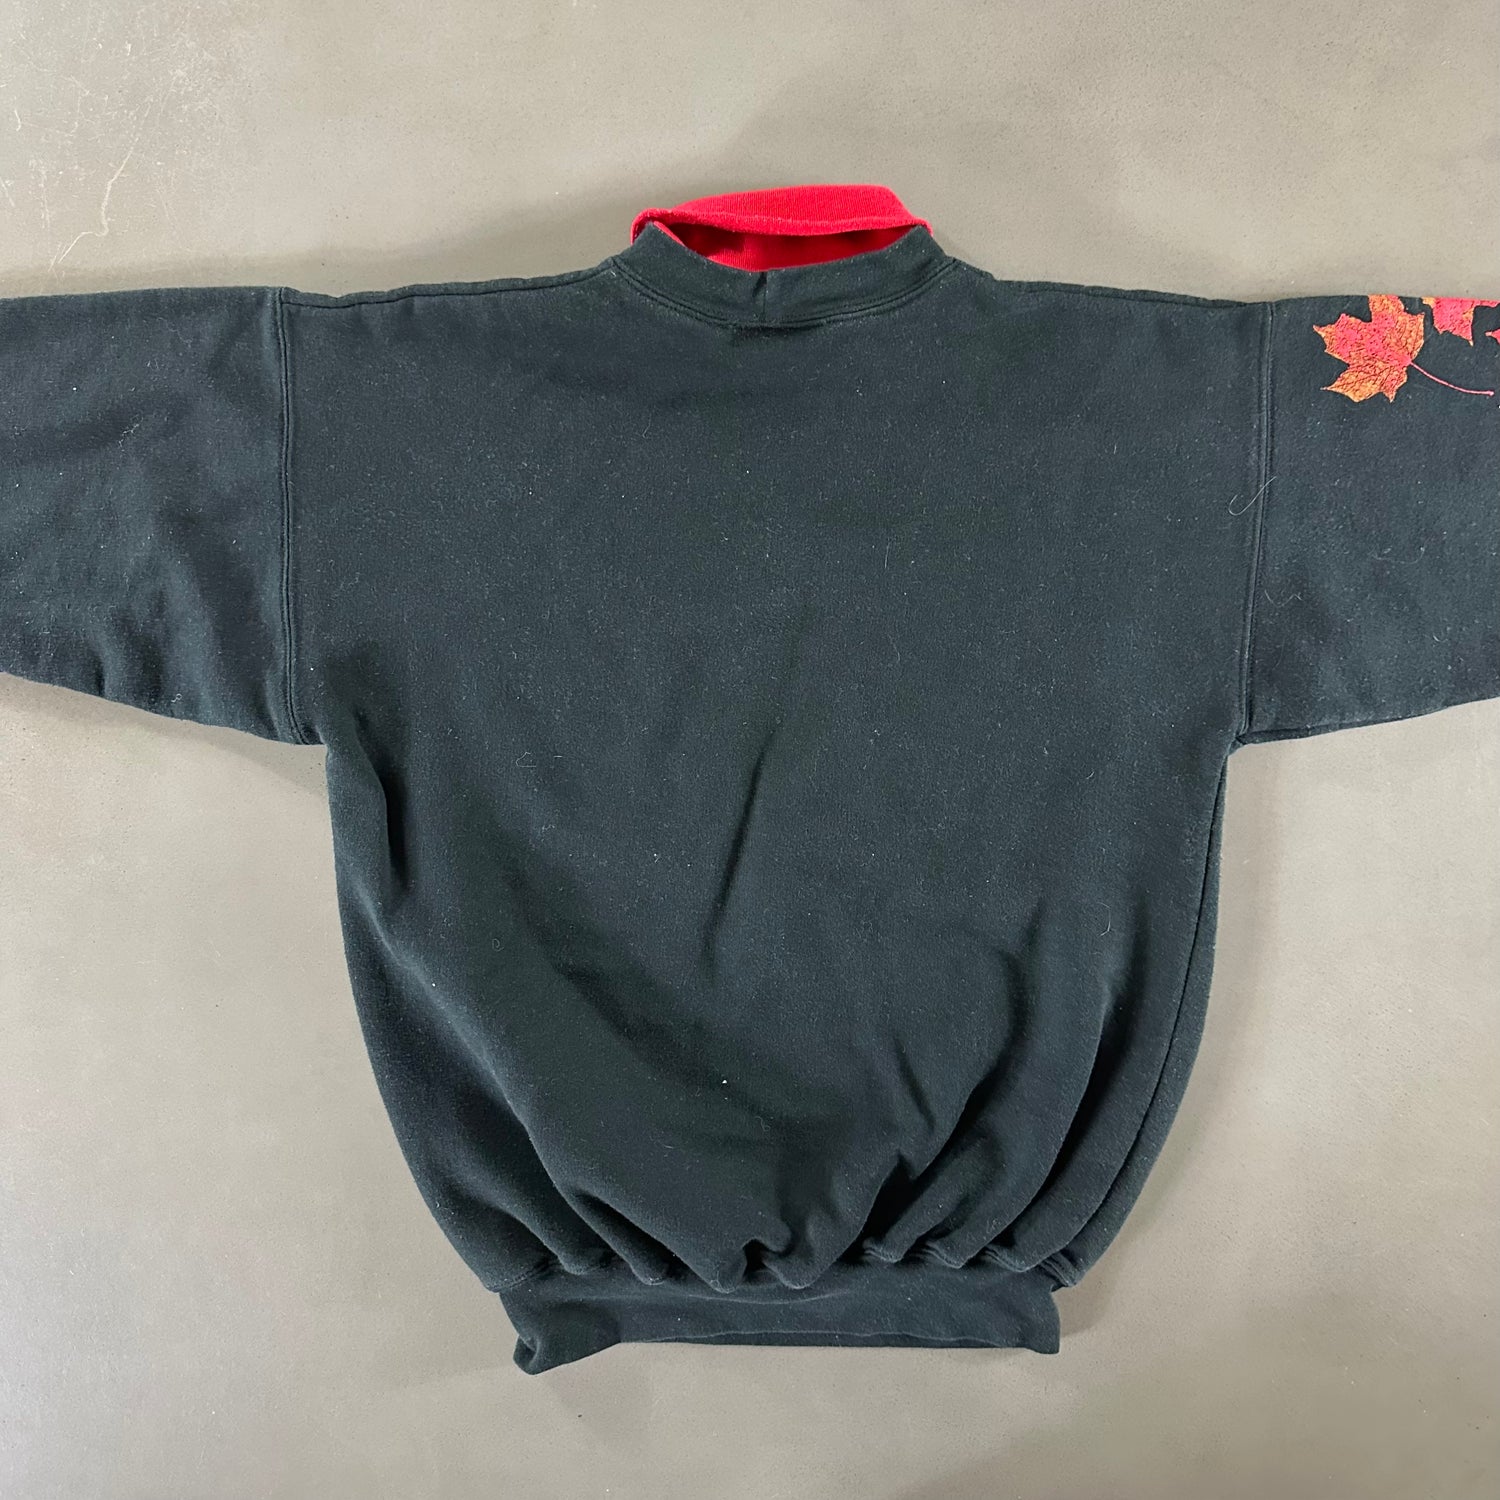 Vintage 1990s Leaf Sweatshirt size Medium